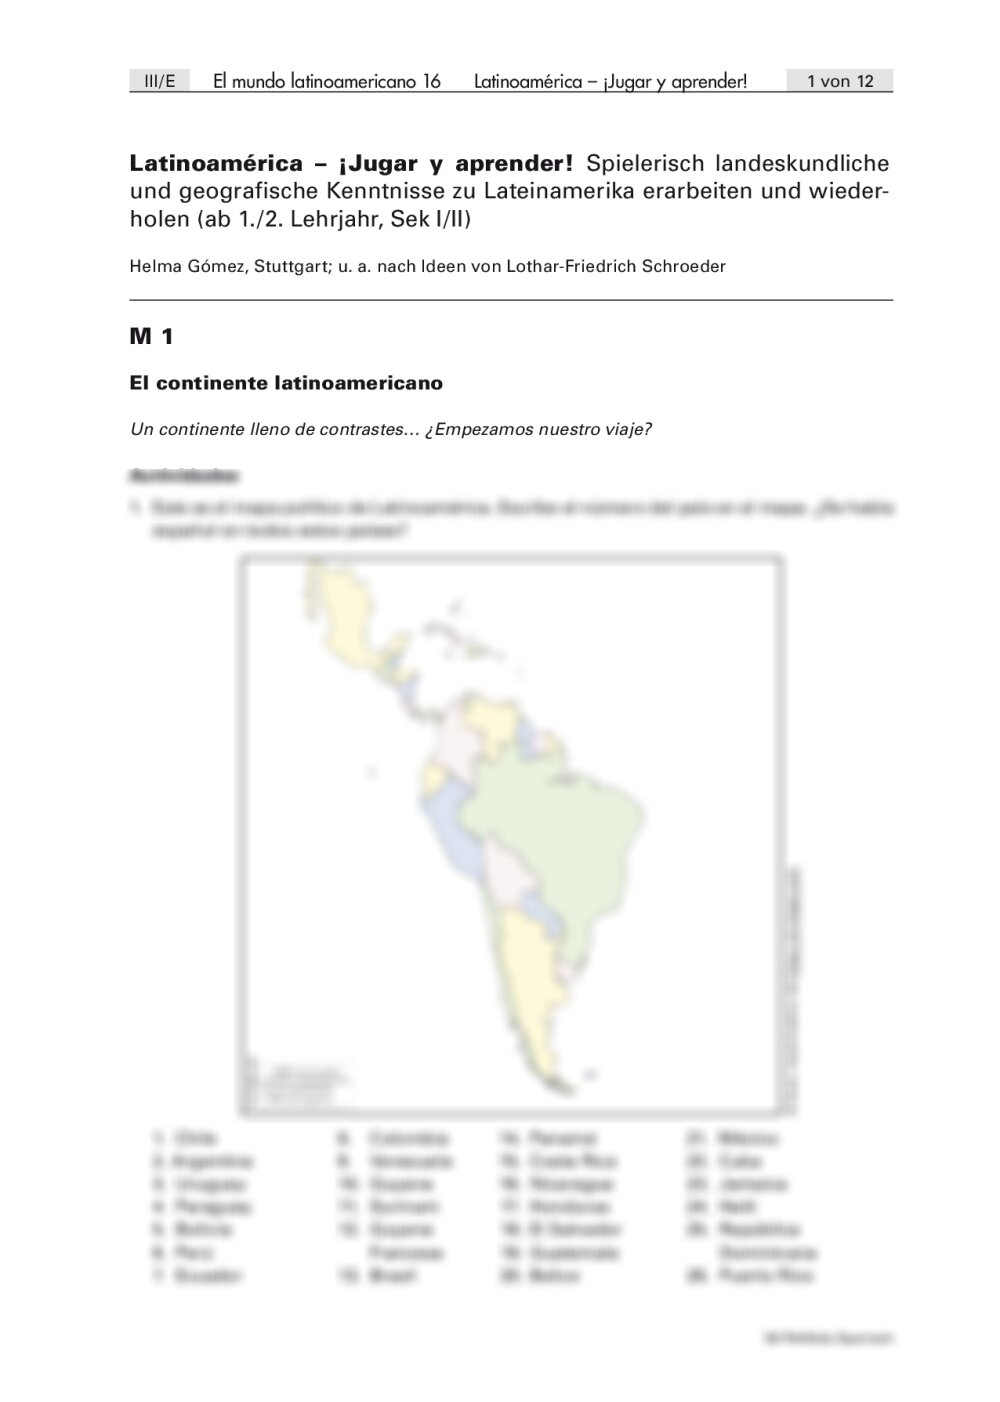 Spielerisch landeskundliche und geografische Kenntnisse zu Lateinamerika erarbeiten und wiederholen - Seite 1